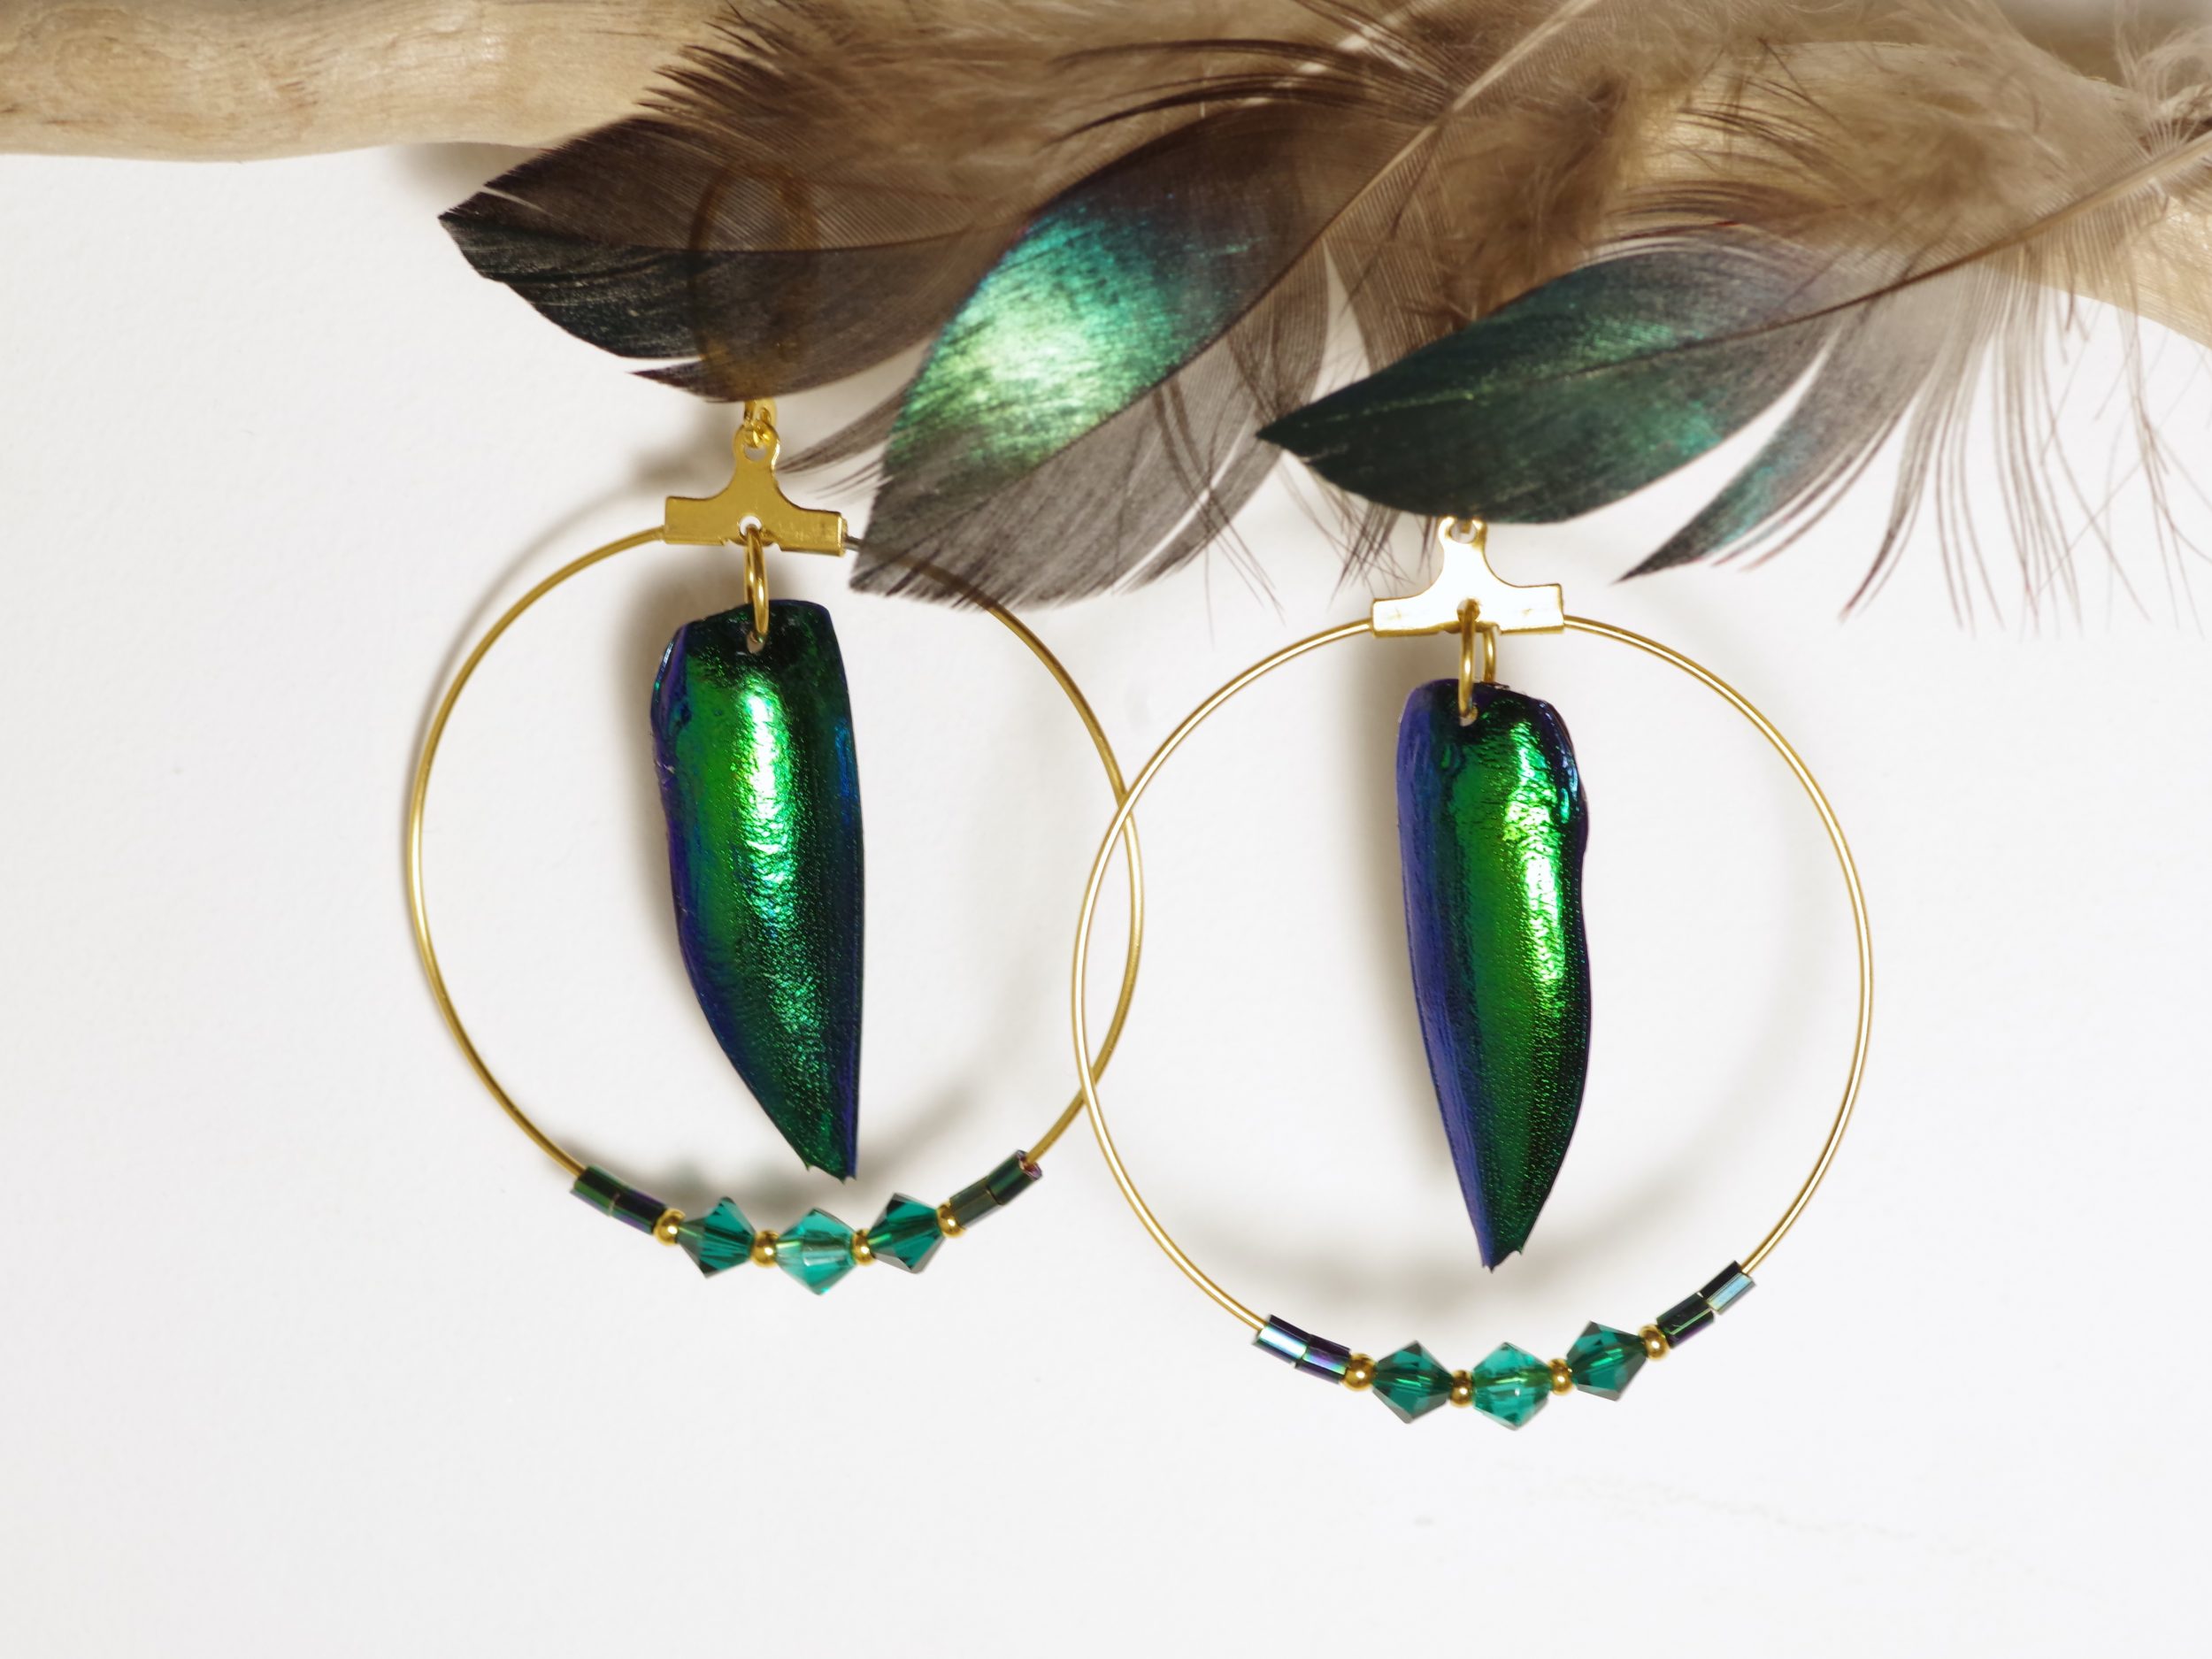 boucles d'oreilles avec des élytres de scarabée vert bleuté, reflets brikllants métalliques, et anneaux dorés